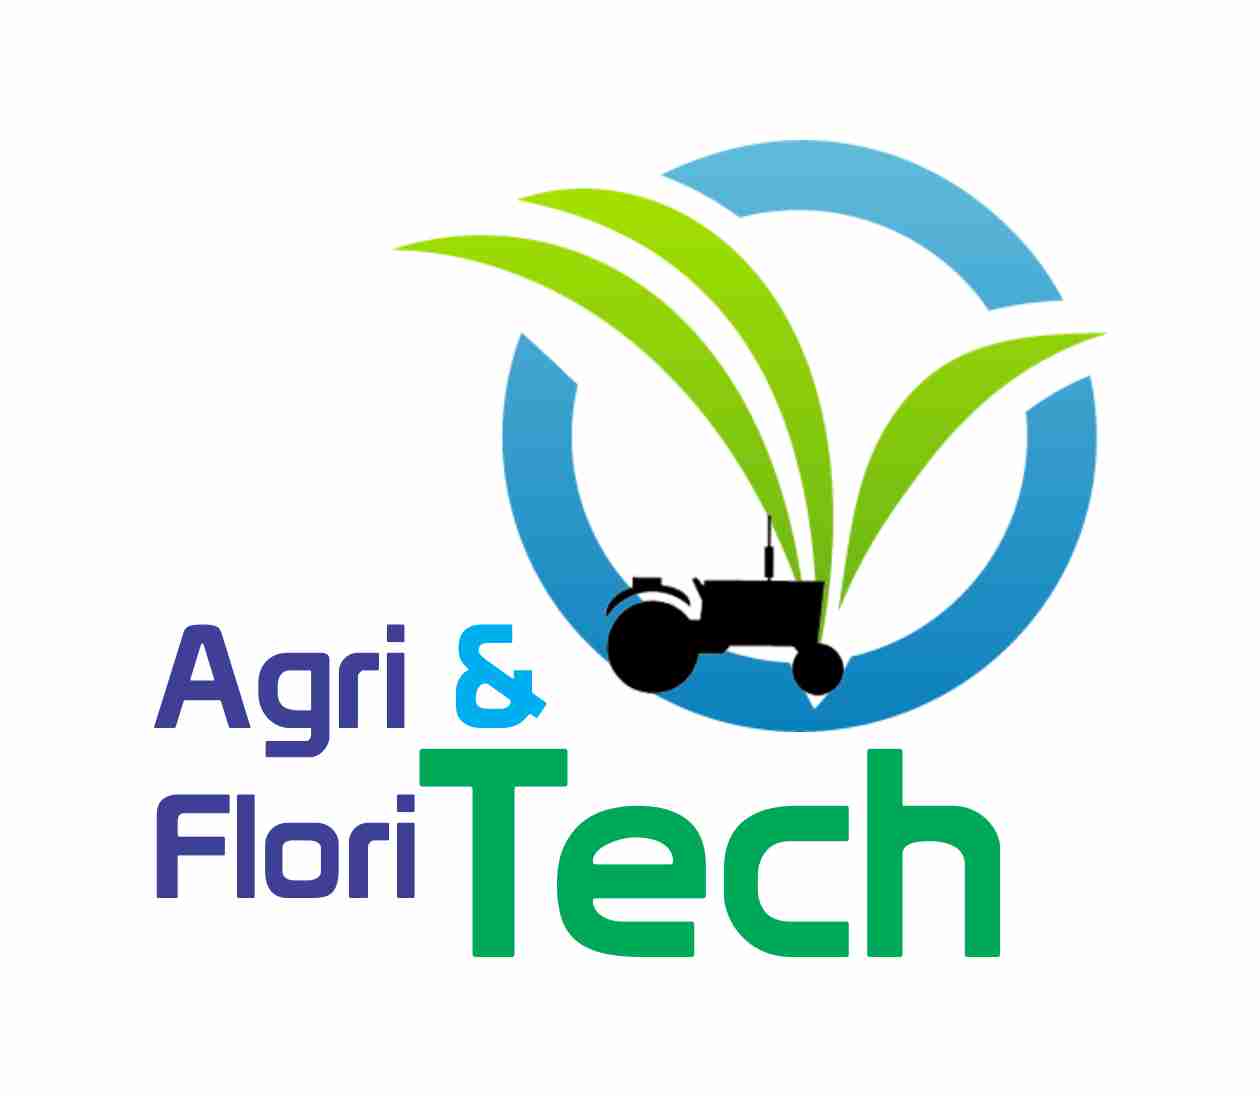 Agri & Flori Tech 2013